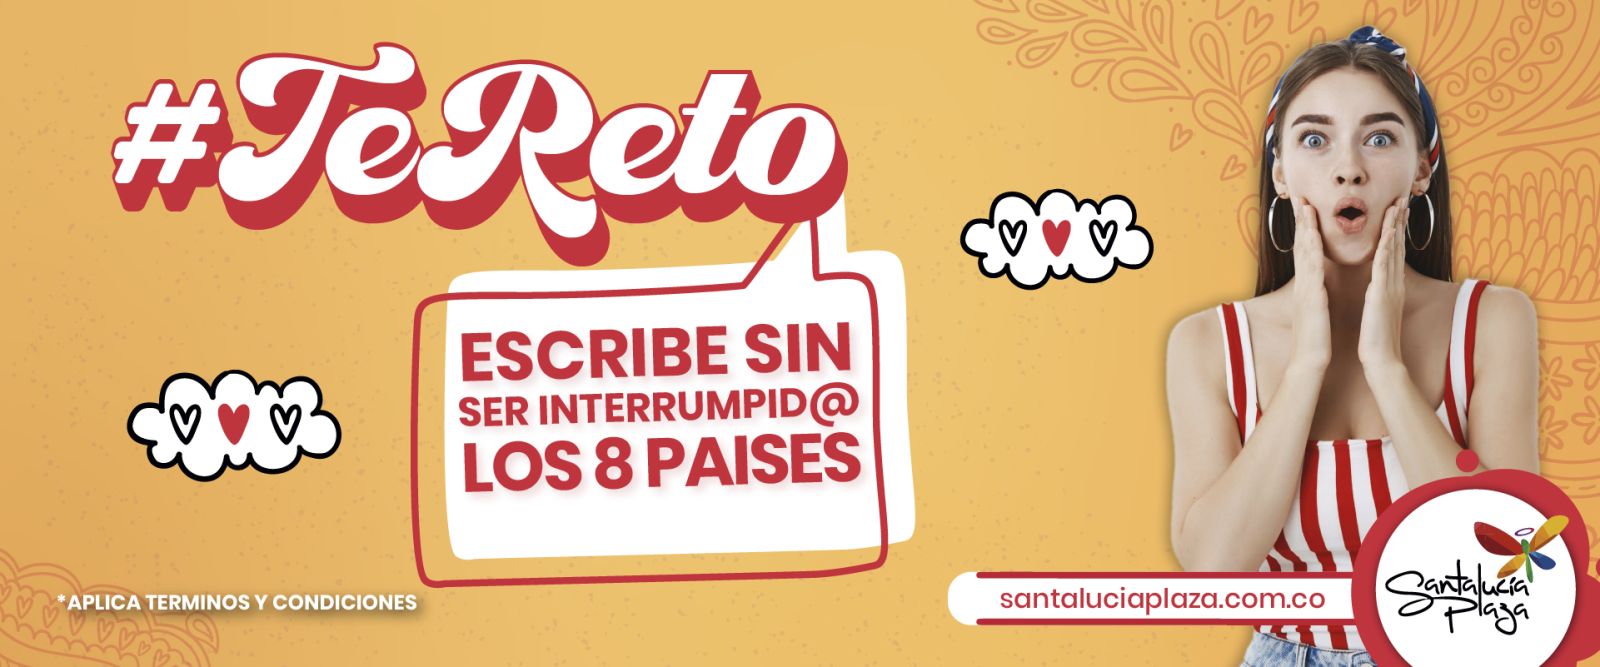 SORTEO VENCIDO #TeReto A ESCRIBIR SIN SER INTERRUMPIDO LOS 8 PAISES.